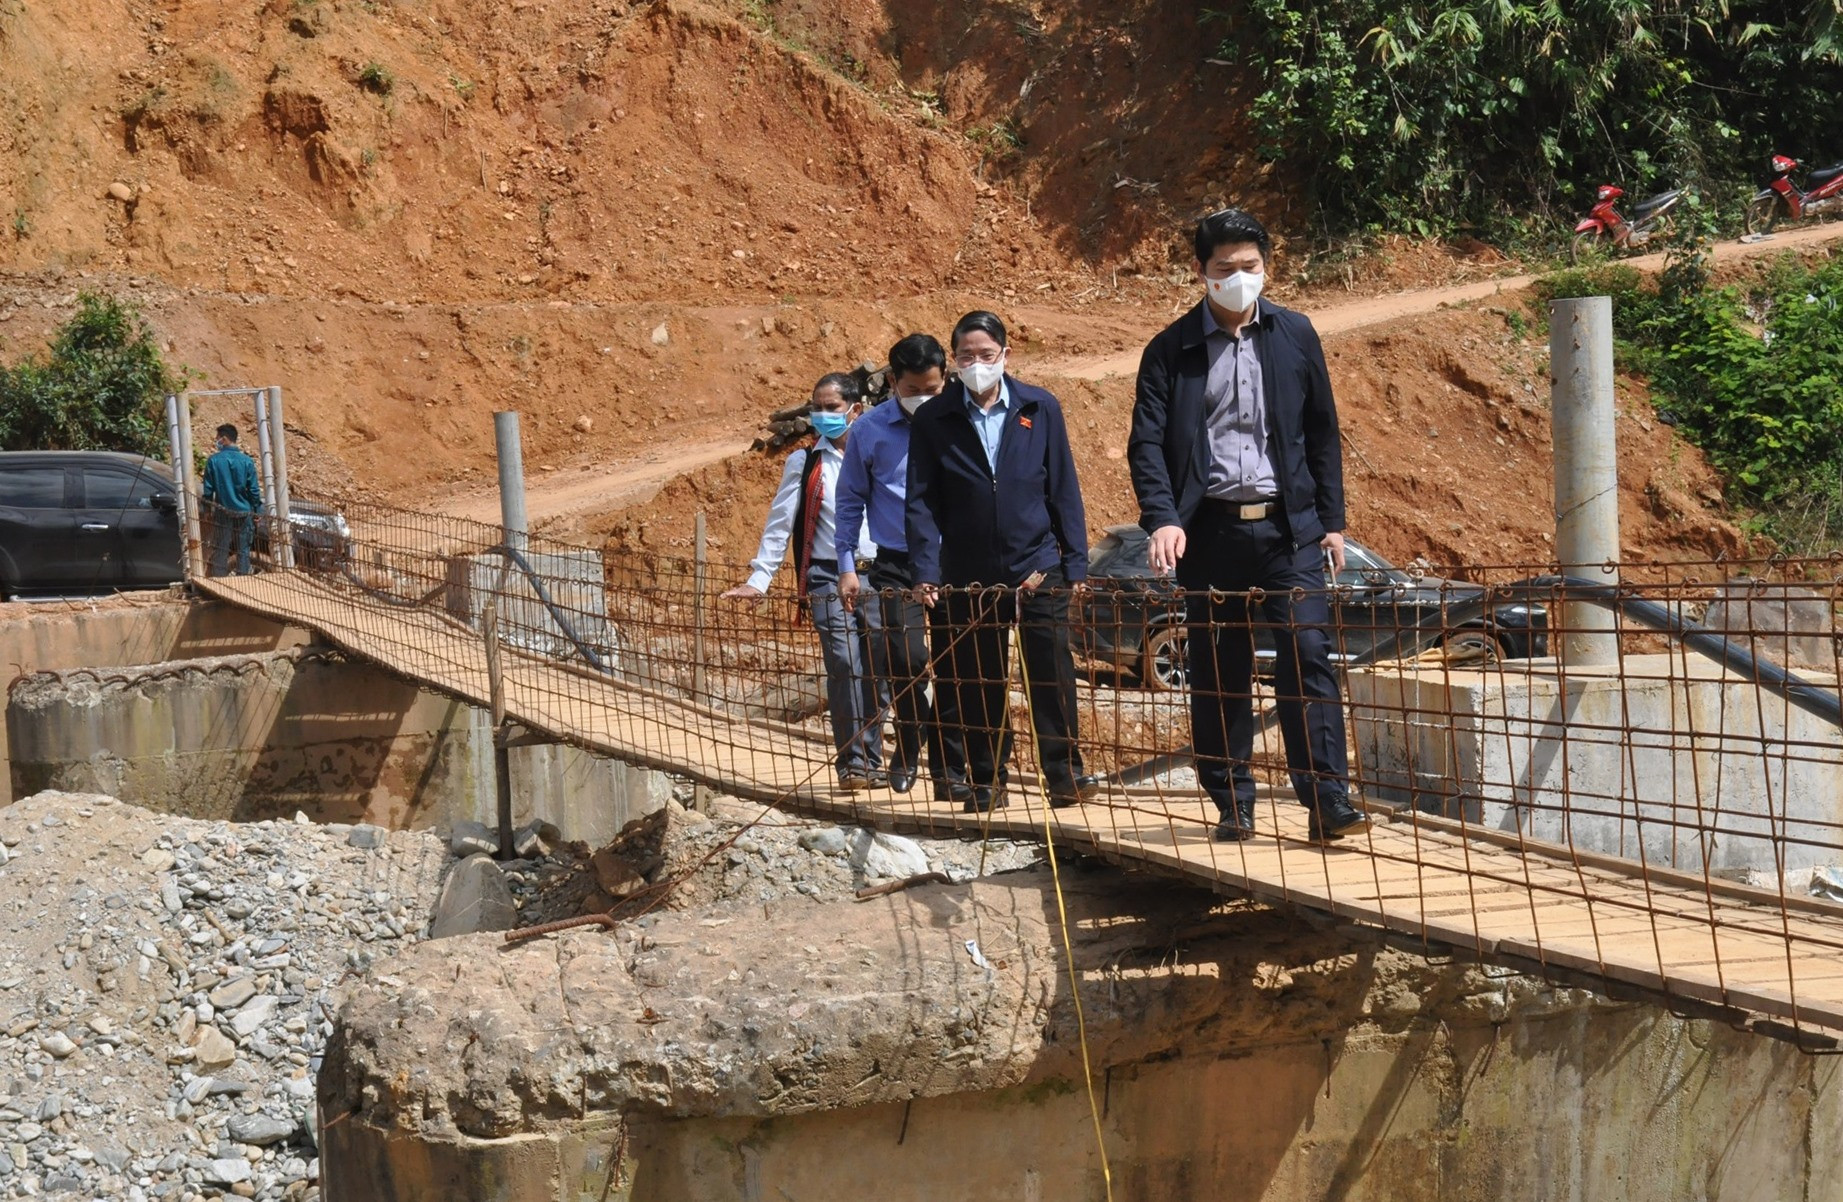 Phó Chủ tịch Quốc hội Nguyễn Đức Hải khảo sát việc xây dựng lại cầu dẫn vào thôn 2, bị trôi do lũ cuối năm 2020. Ảnh: N.Đ